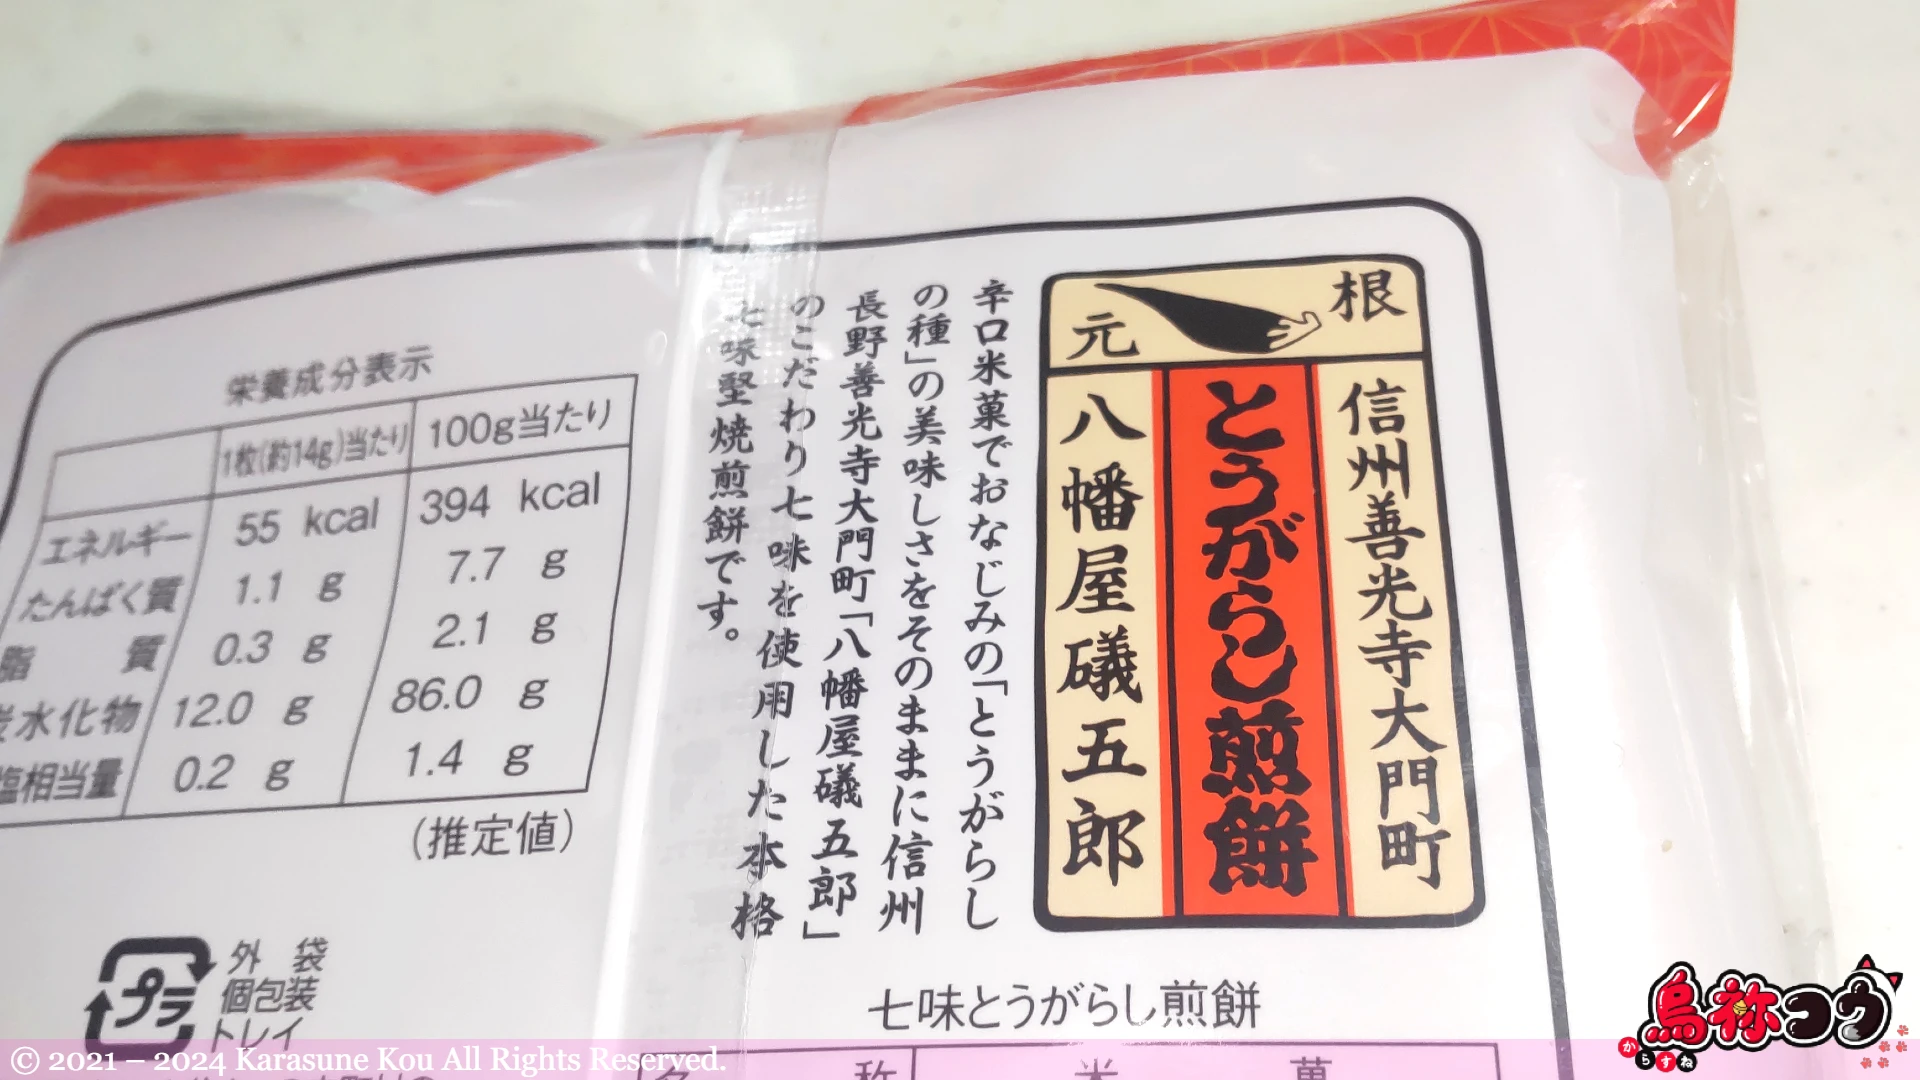 越後製菓の七味とうがらし煎餅に書かれた八幡屋礒五郎の七味とうがらしの説明です